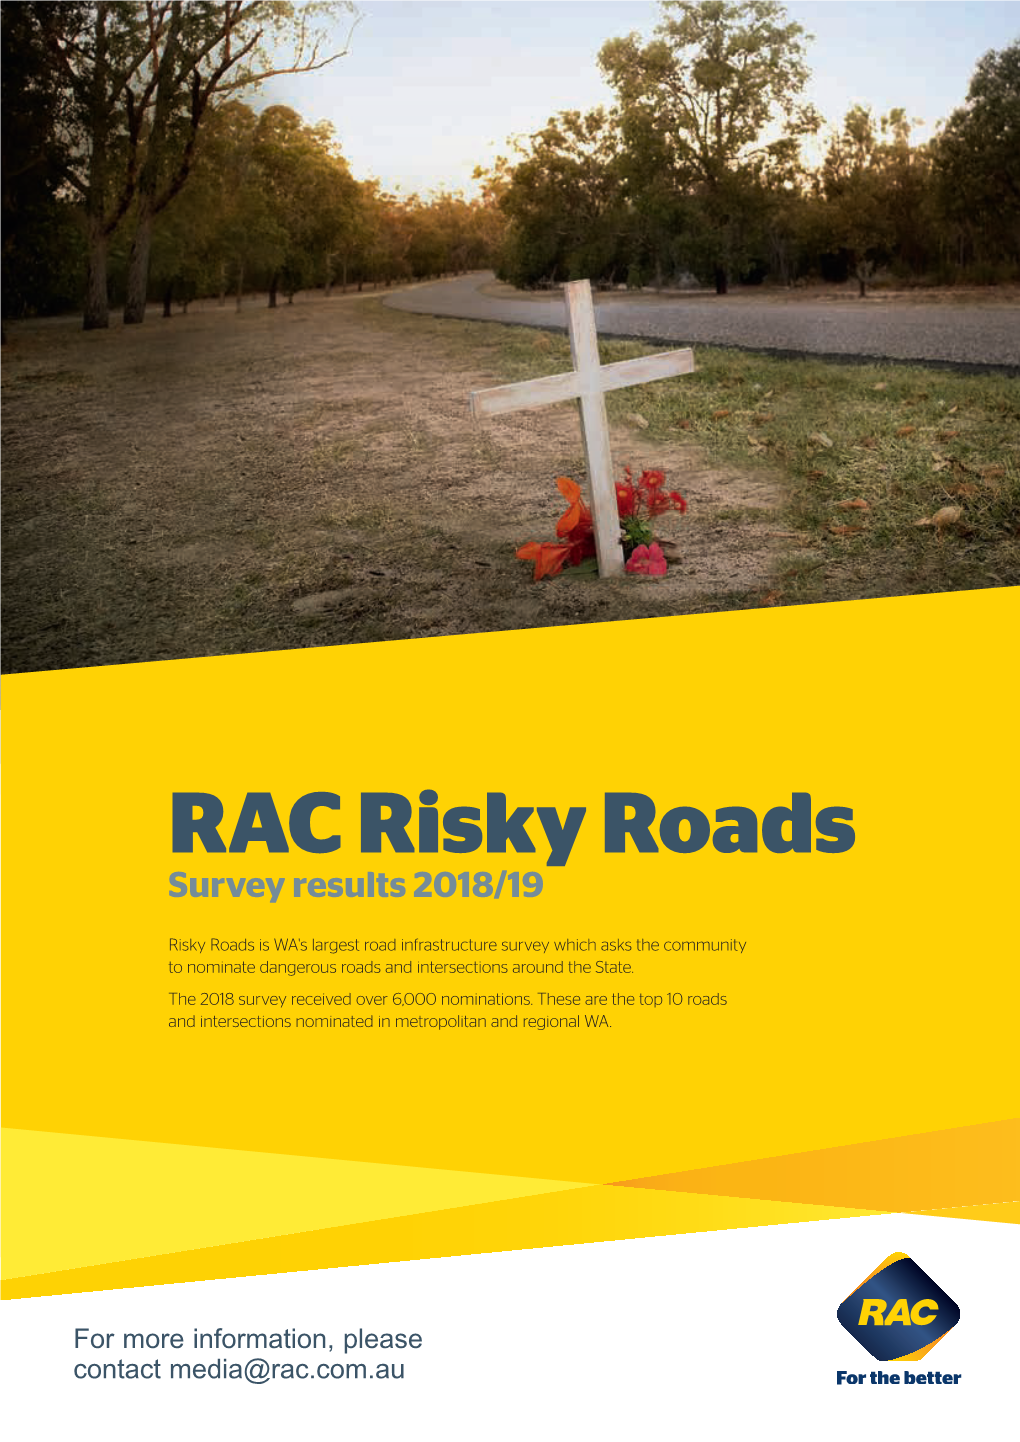 RAC Risky Roads Survey Results 2018/19